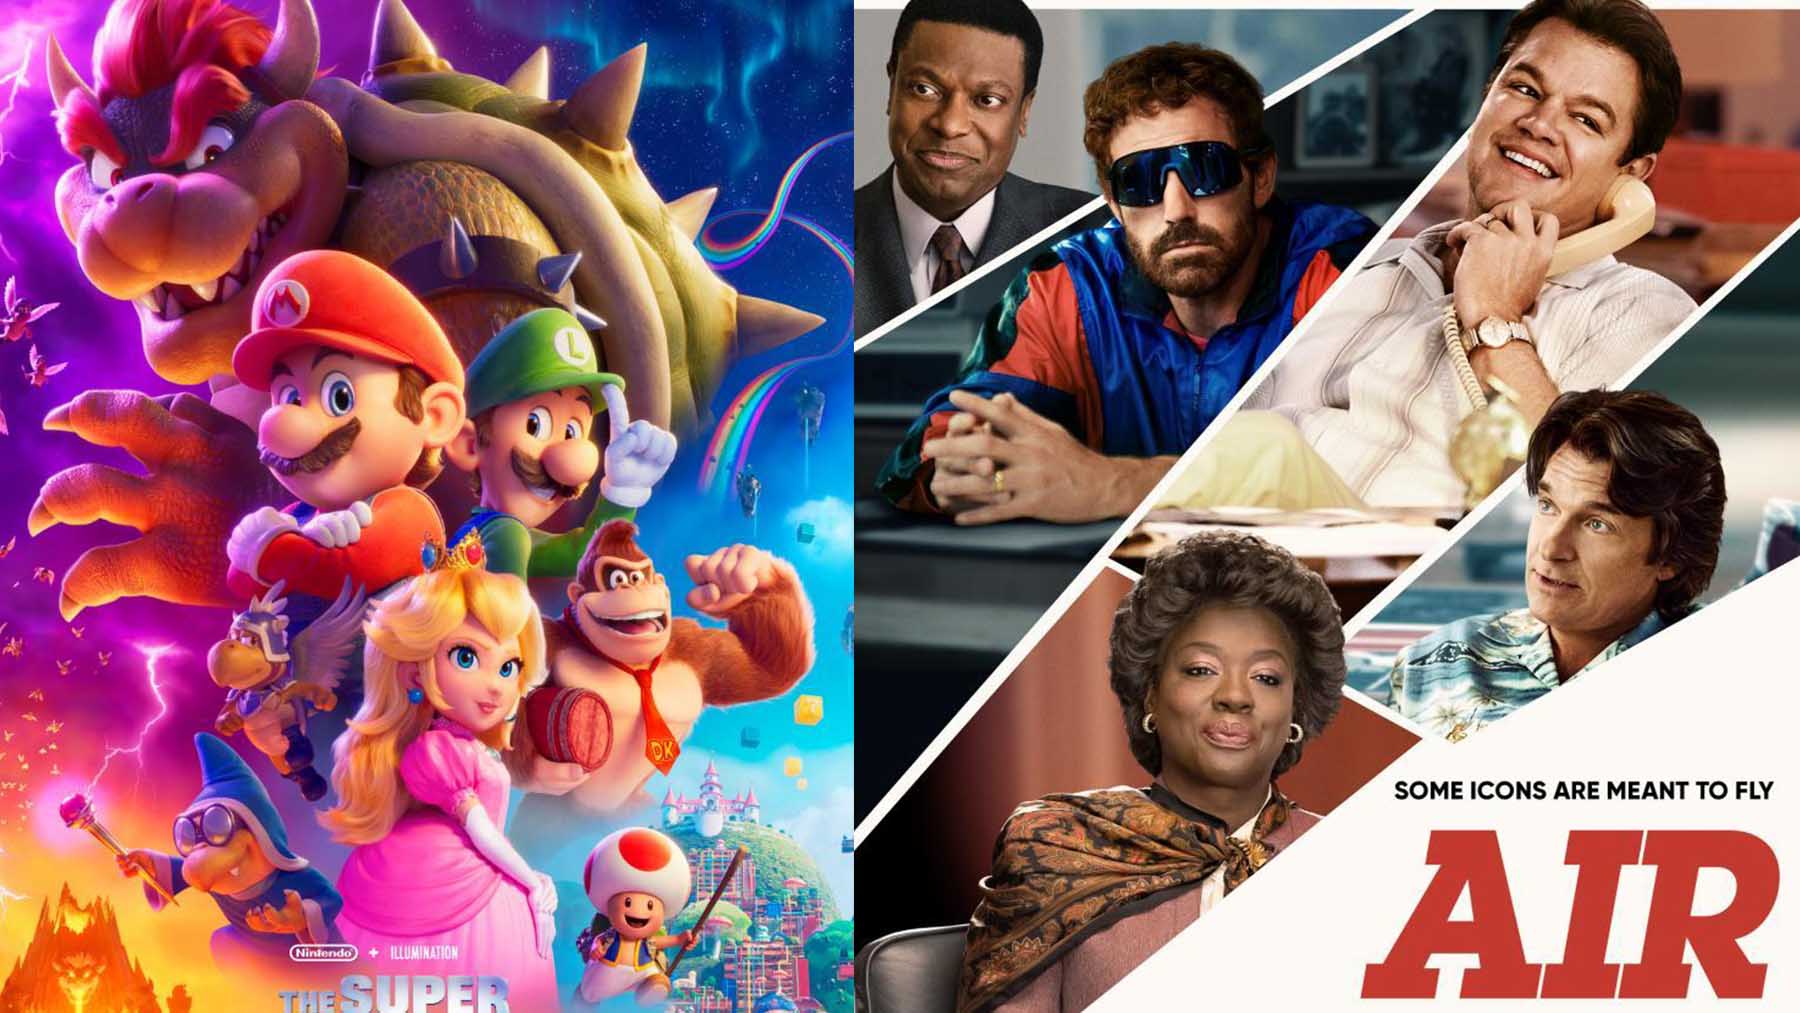 ‘Super Mario Bros: La película’ y ‘Air’ son los dos grandes estrenos de este miércoles